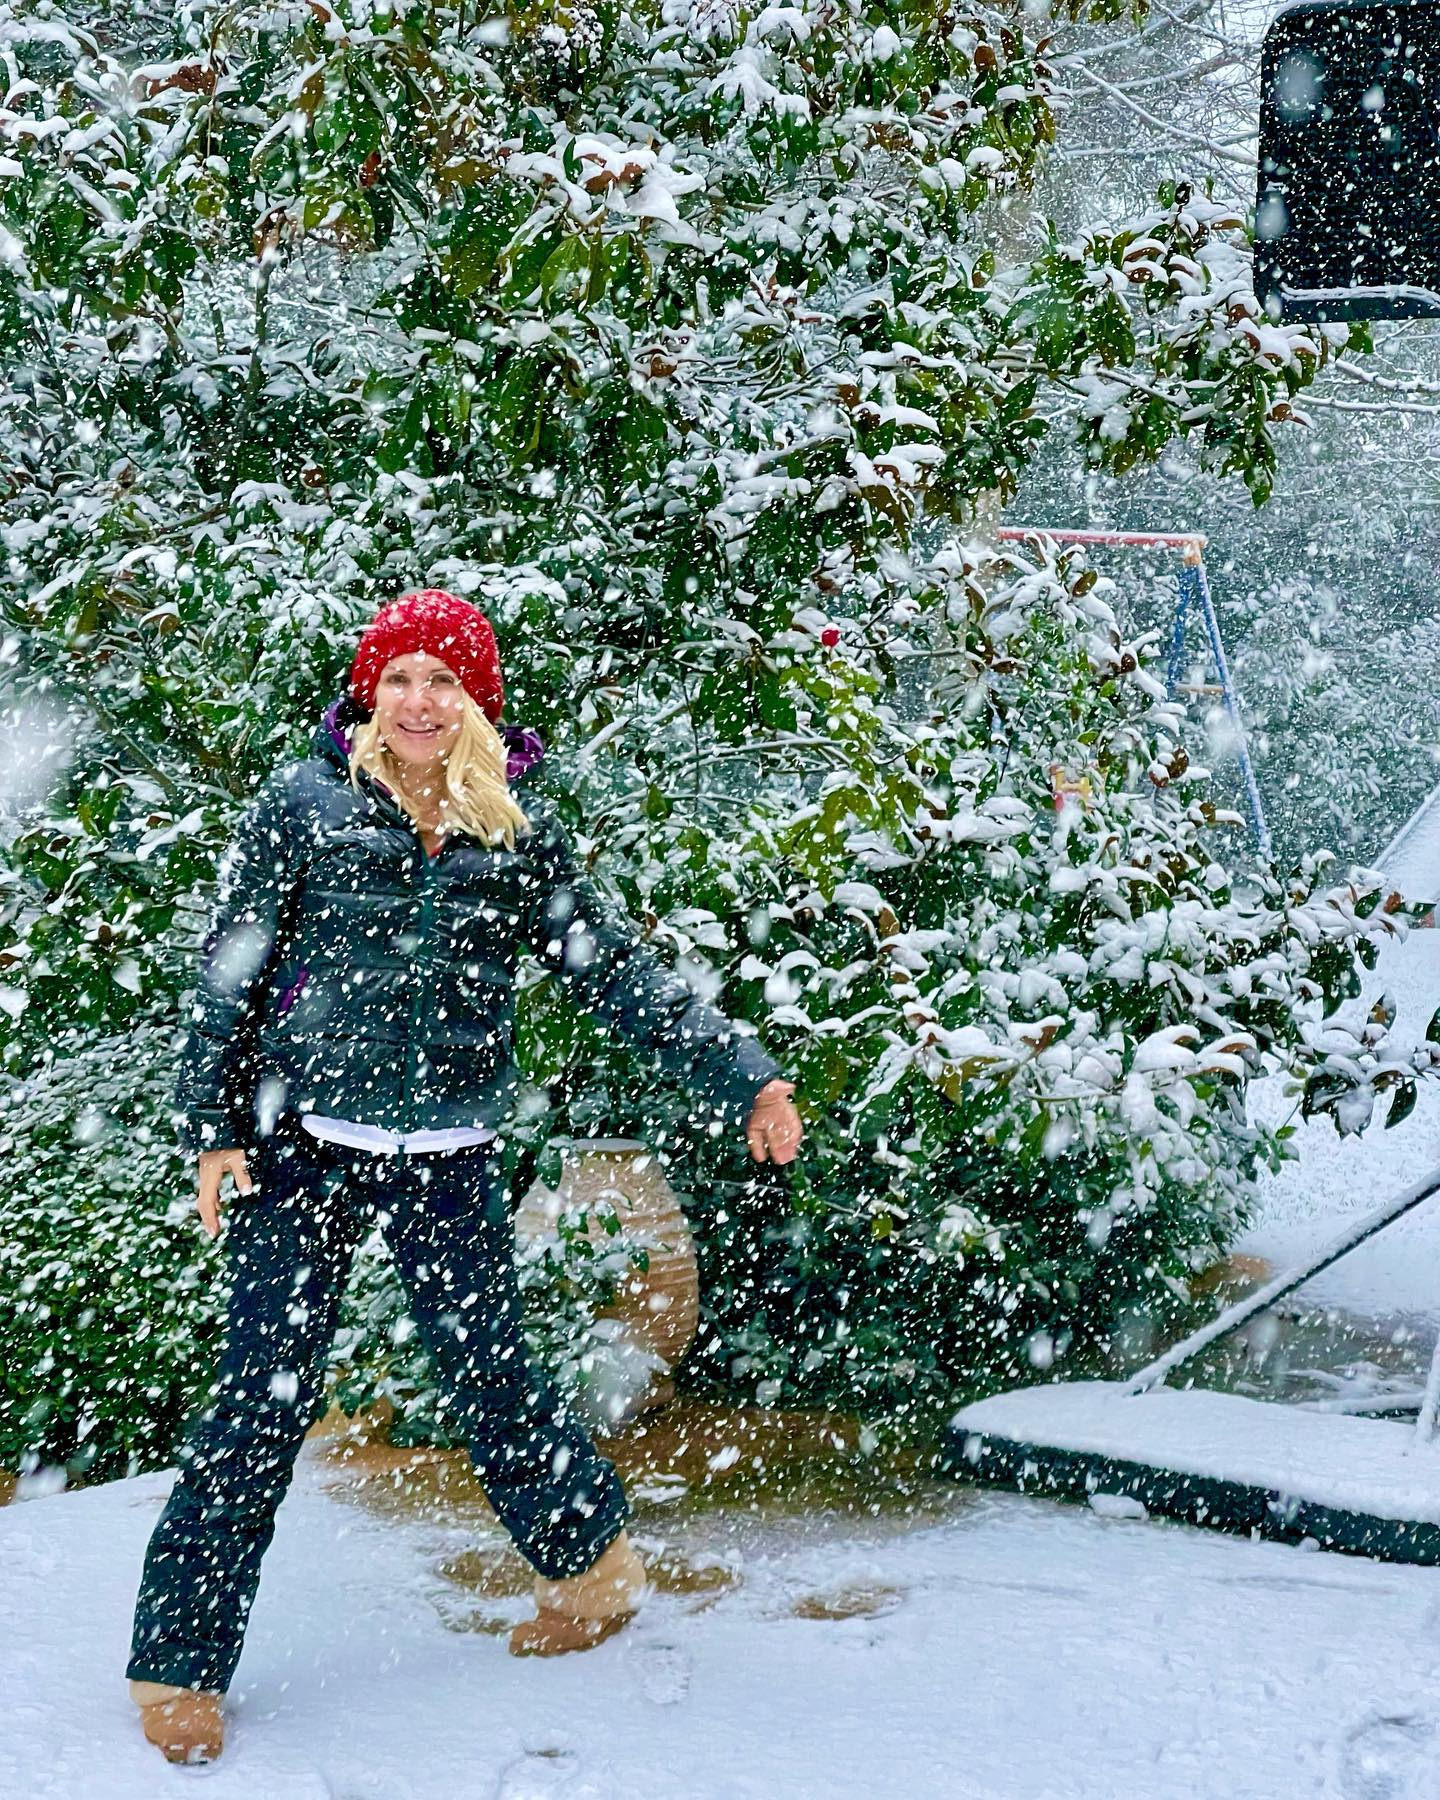 Μενεγάκη: Βγήκε στον χιονισμένο κήπο της και έκανε σαν μικρό παιδί[photos]